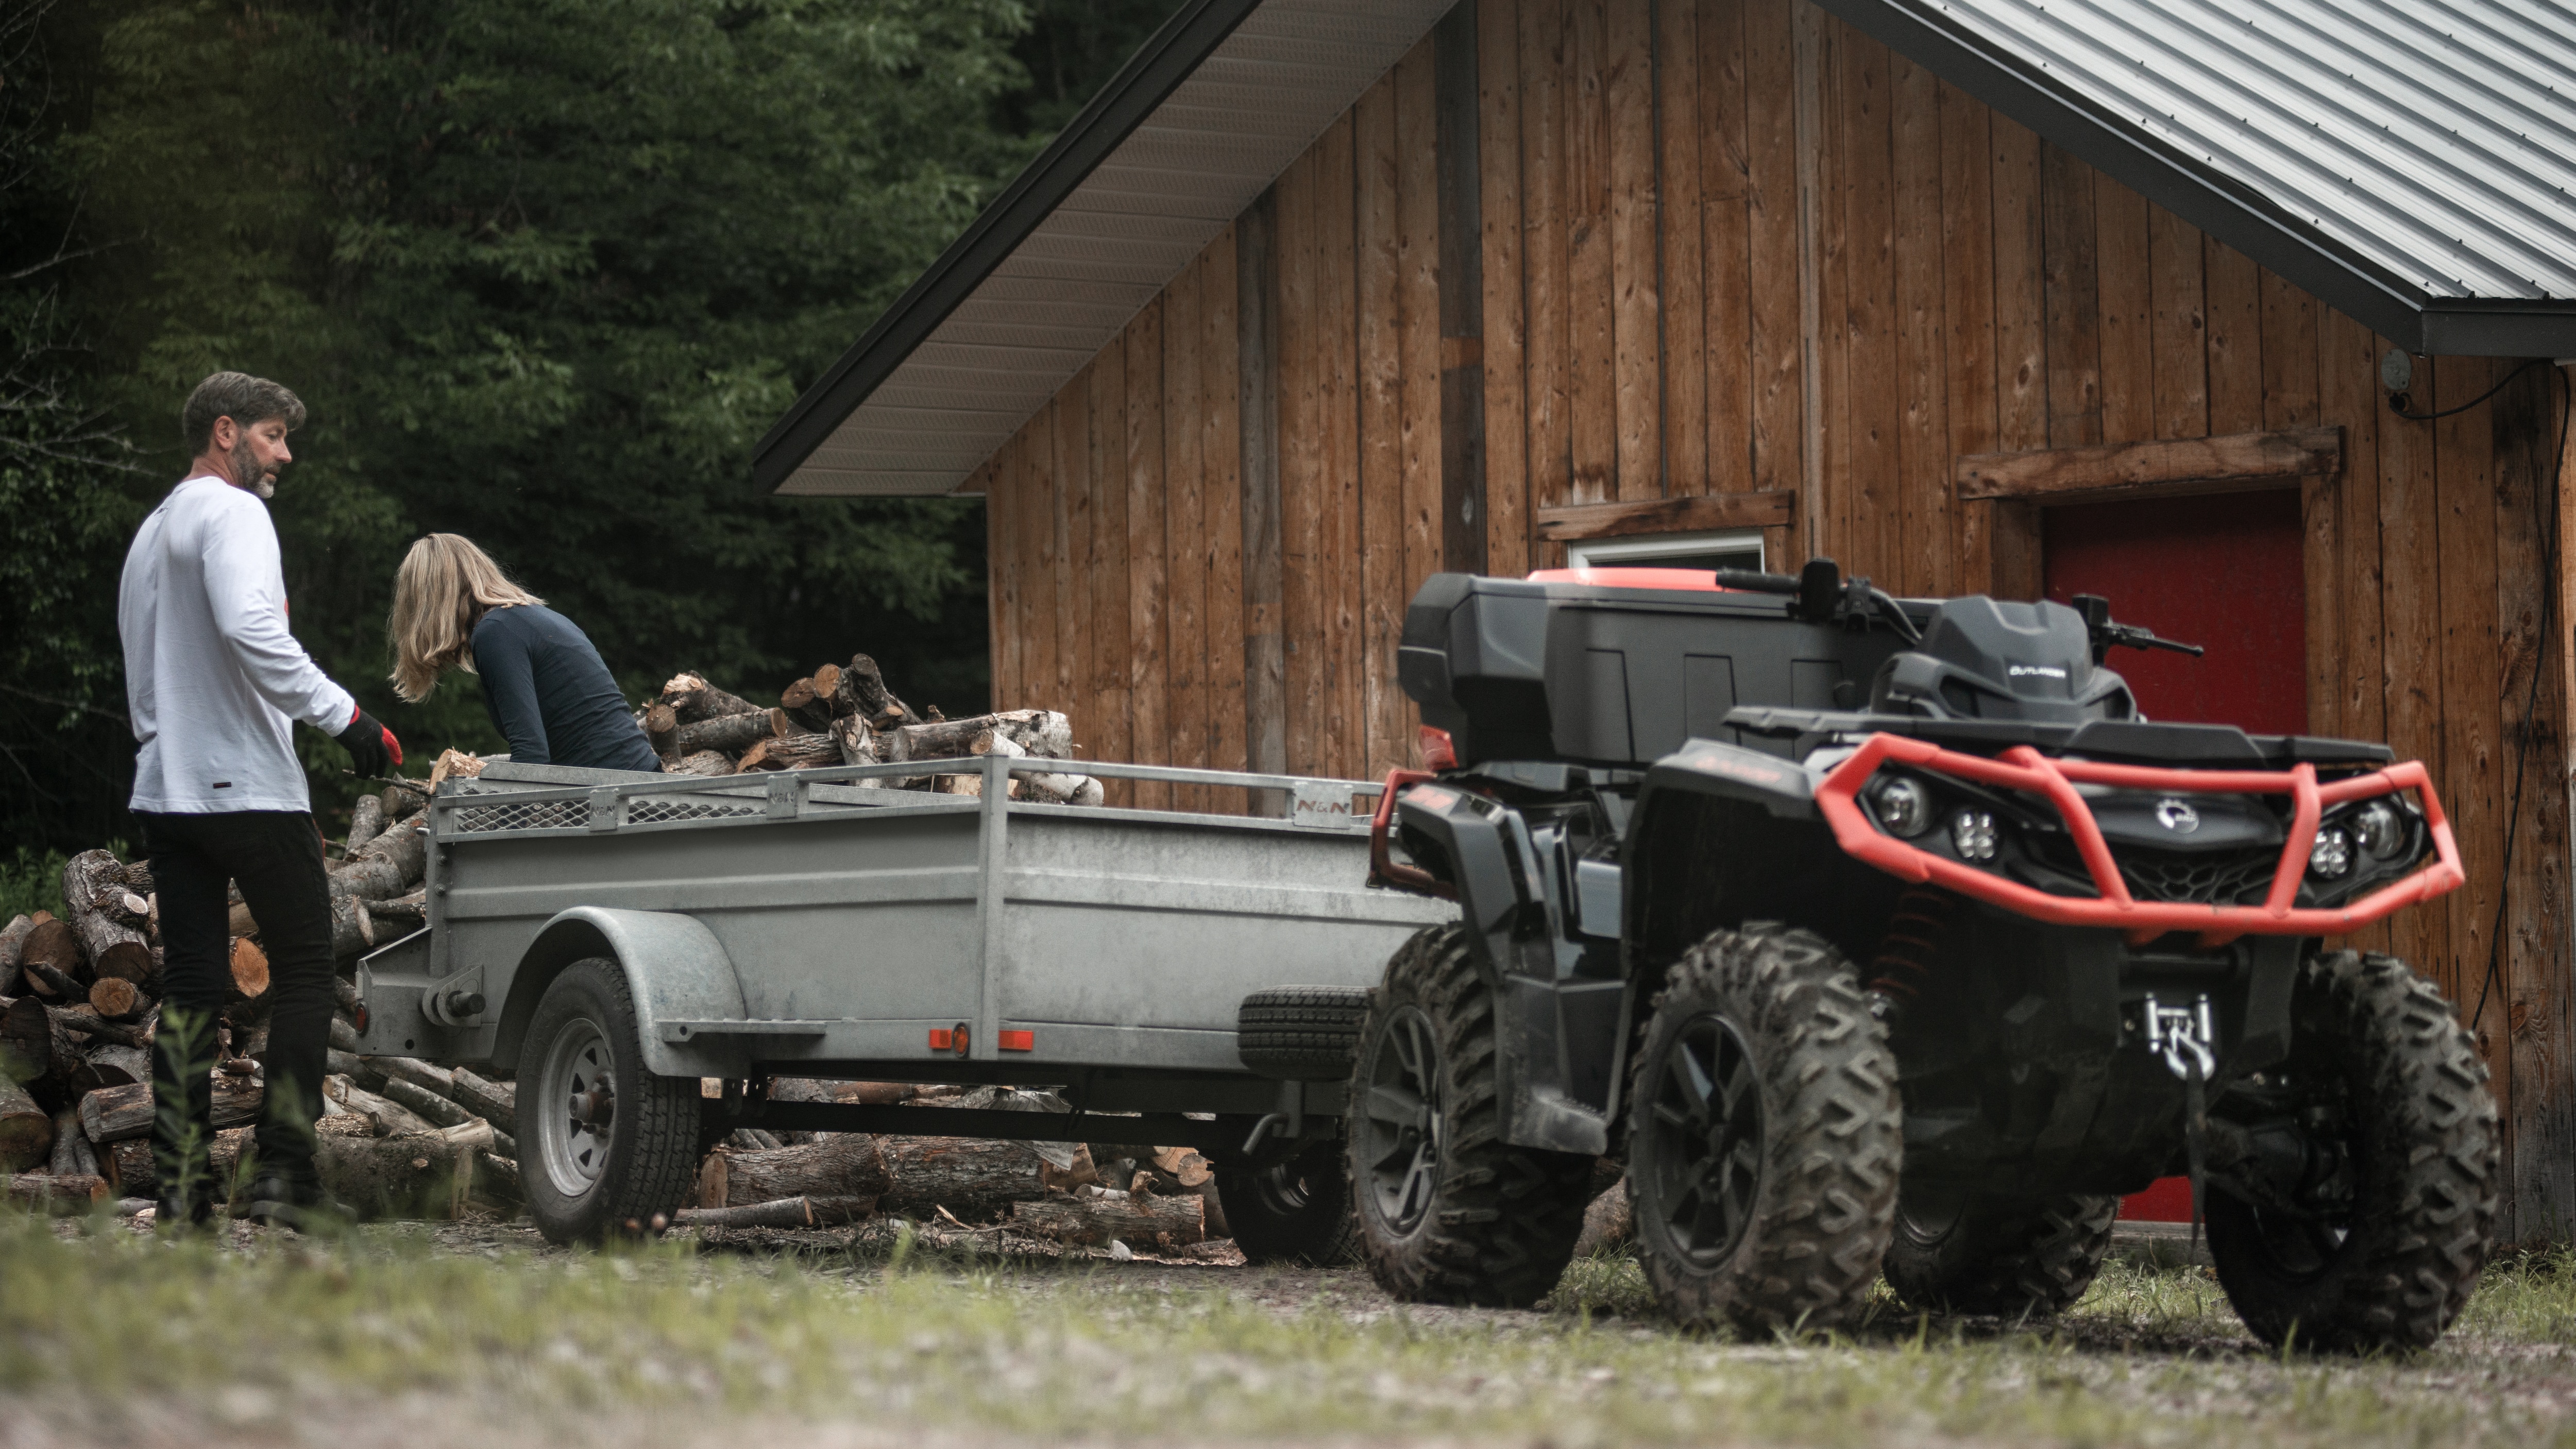 Dwie osoby ładujące drewno do przyczepy pojazdu Can-Am Outlander XT ATV